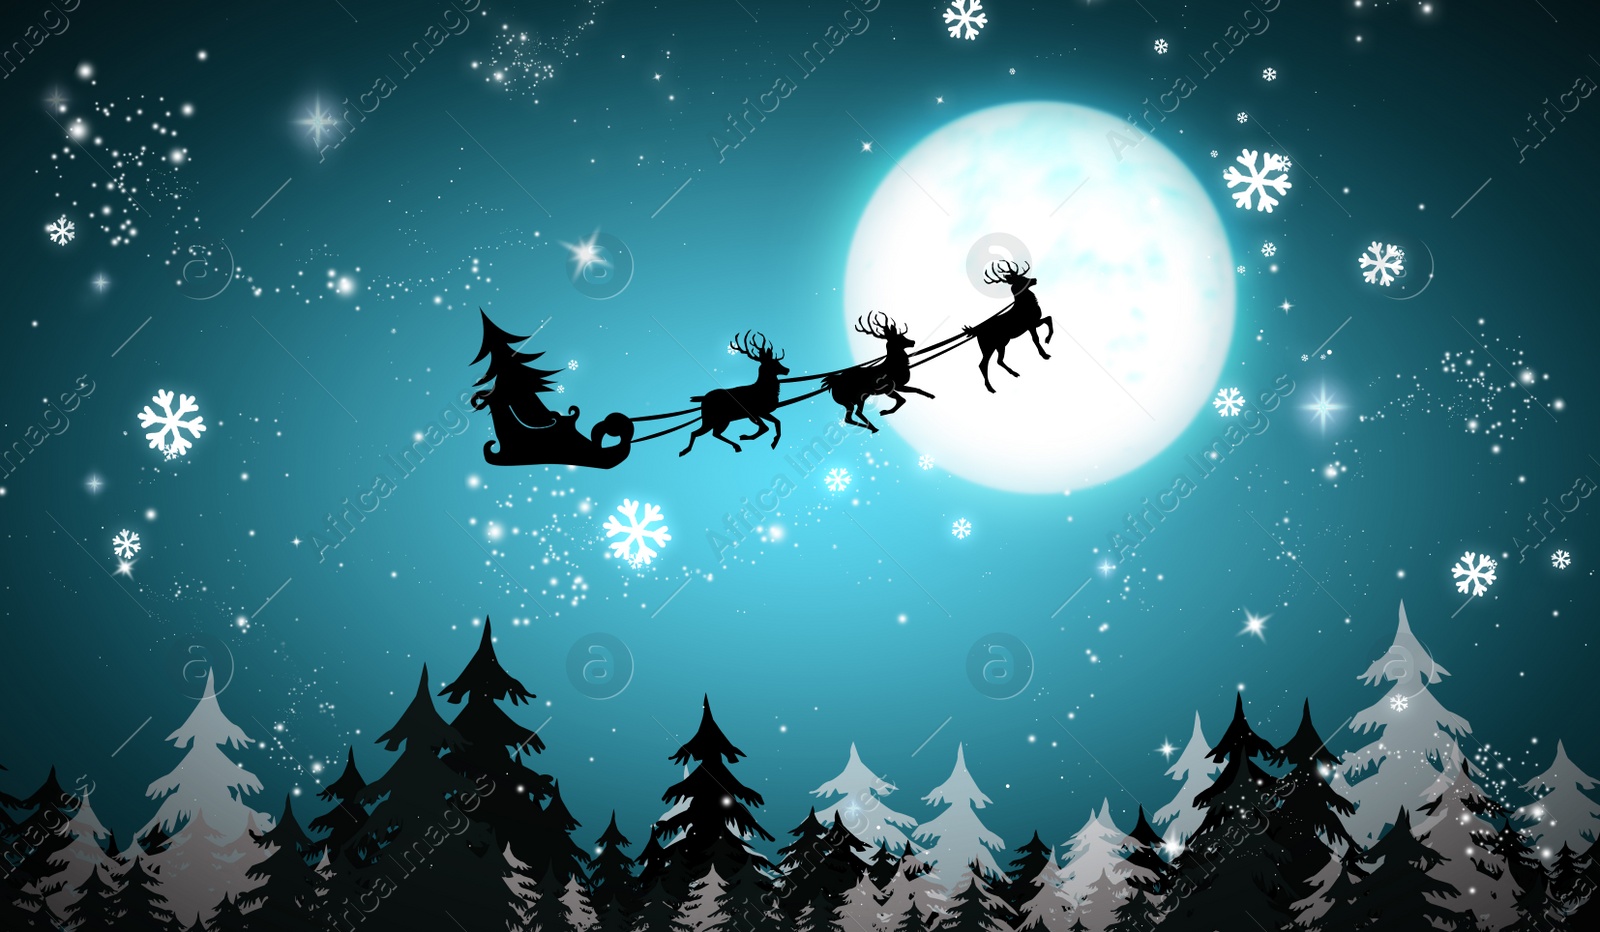 Image of Magic Christmas eve. Reindeers pulling Santa's sleigh in sky on full moon night